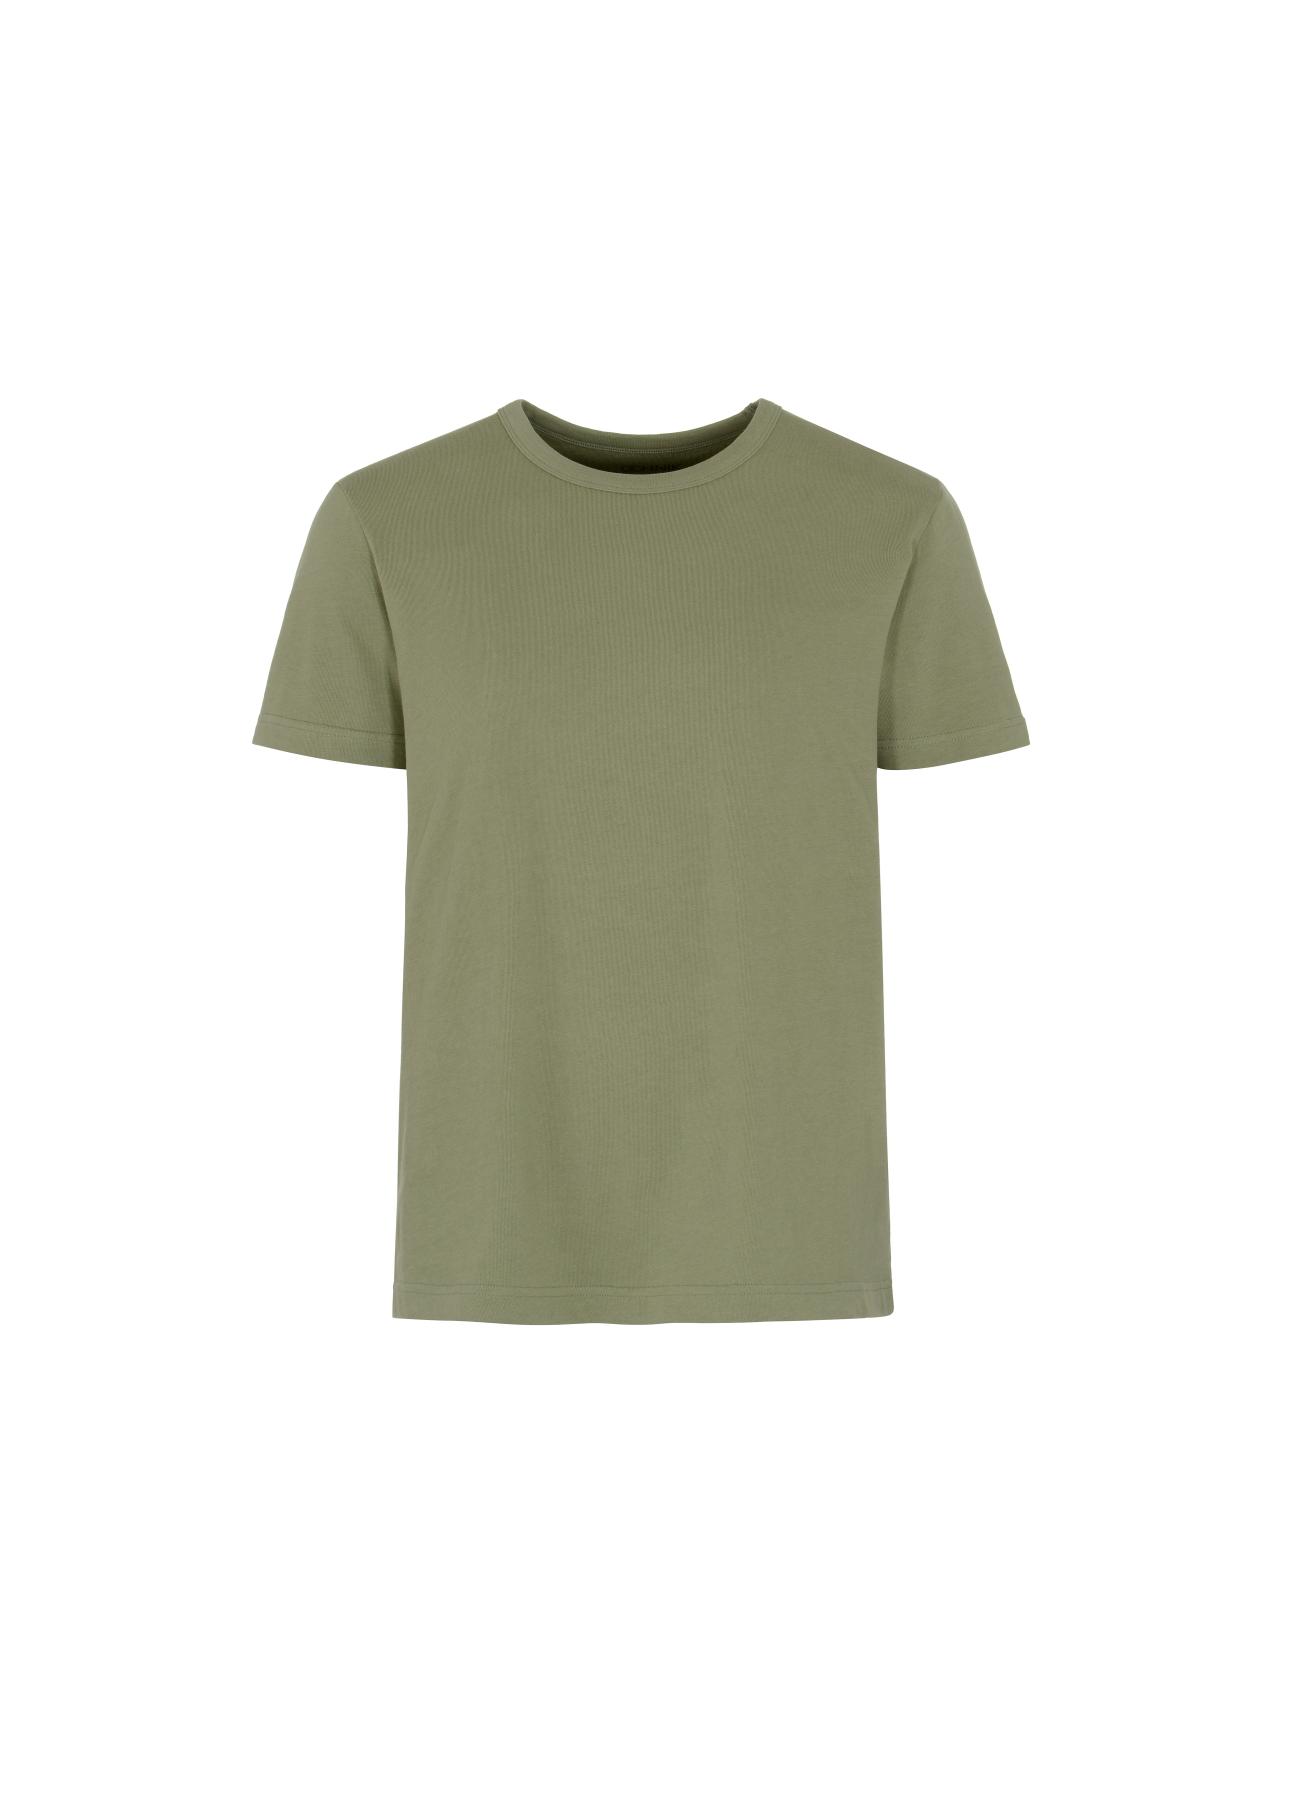 T-shirt męski TSHMT-0072-51(W22)